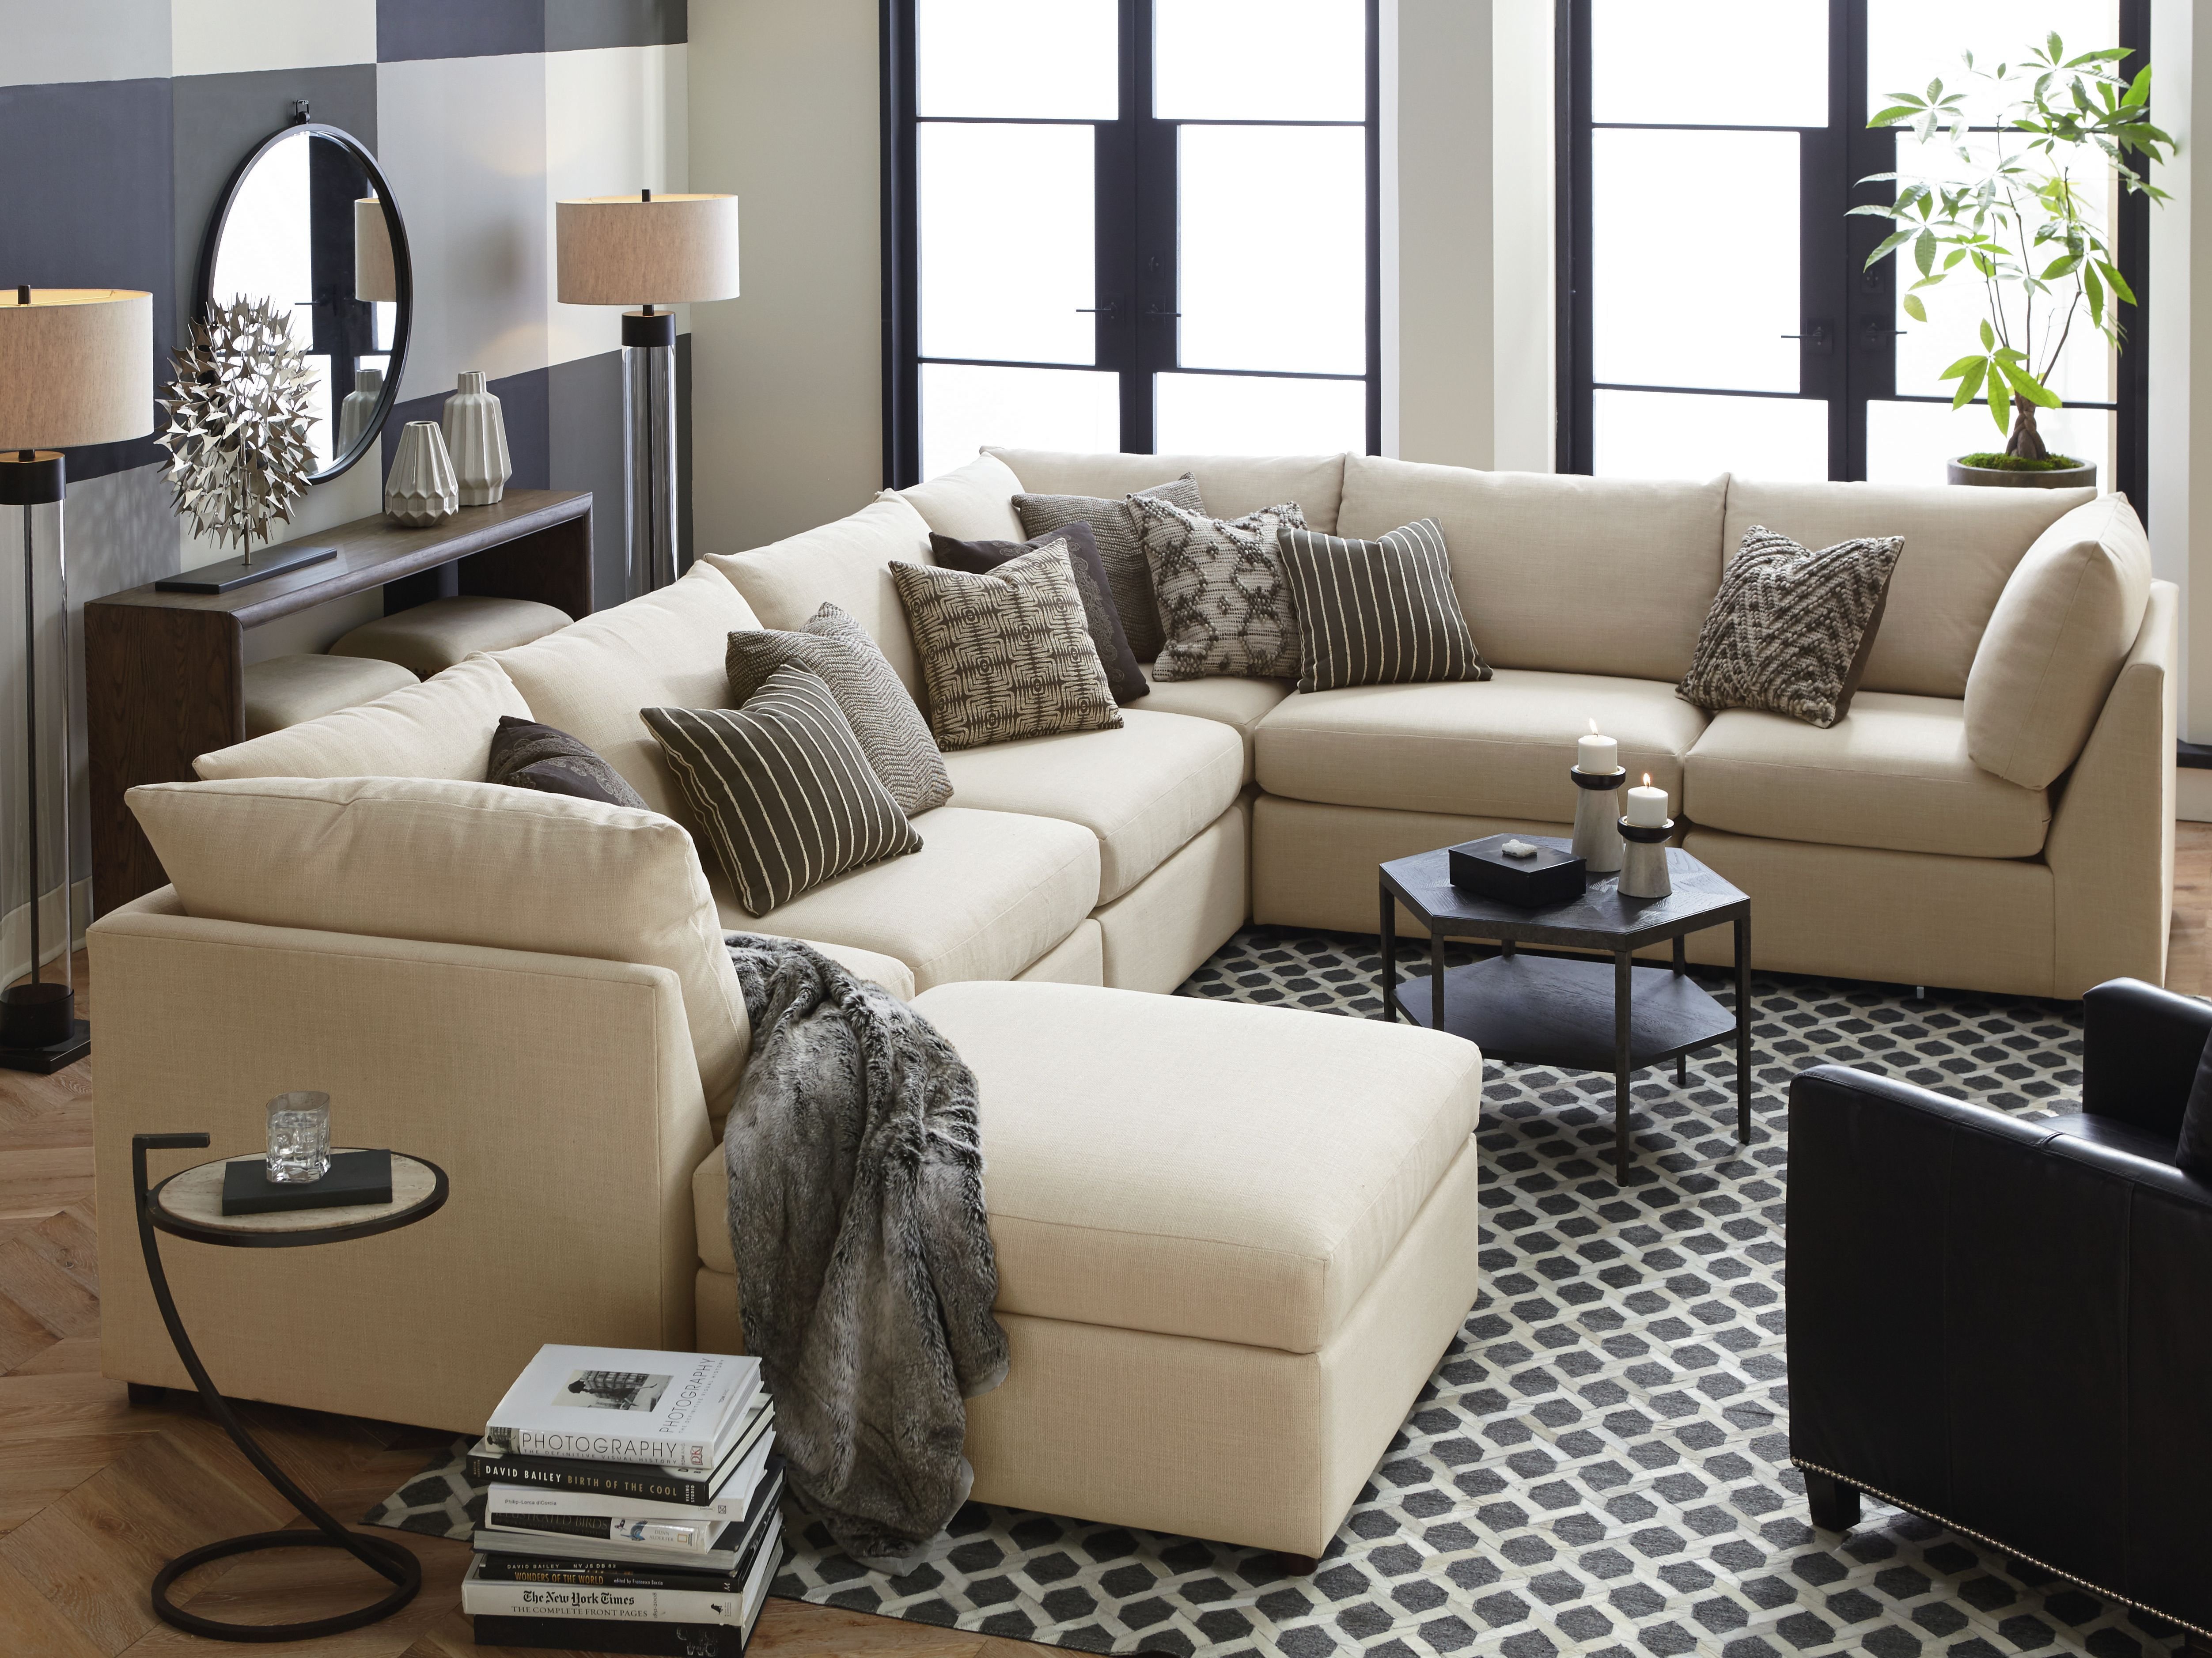 Мягкий с большим количеством. Огромный диван в гостиную. Диван в интерьере. Красивый диван в интерьере. Мягкая мебель в интерьере гостиной.